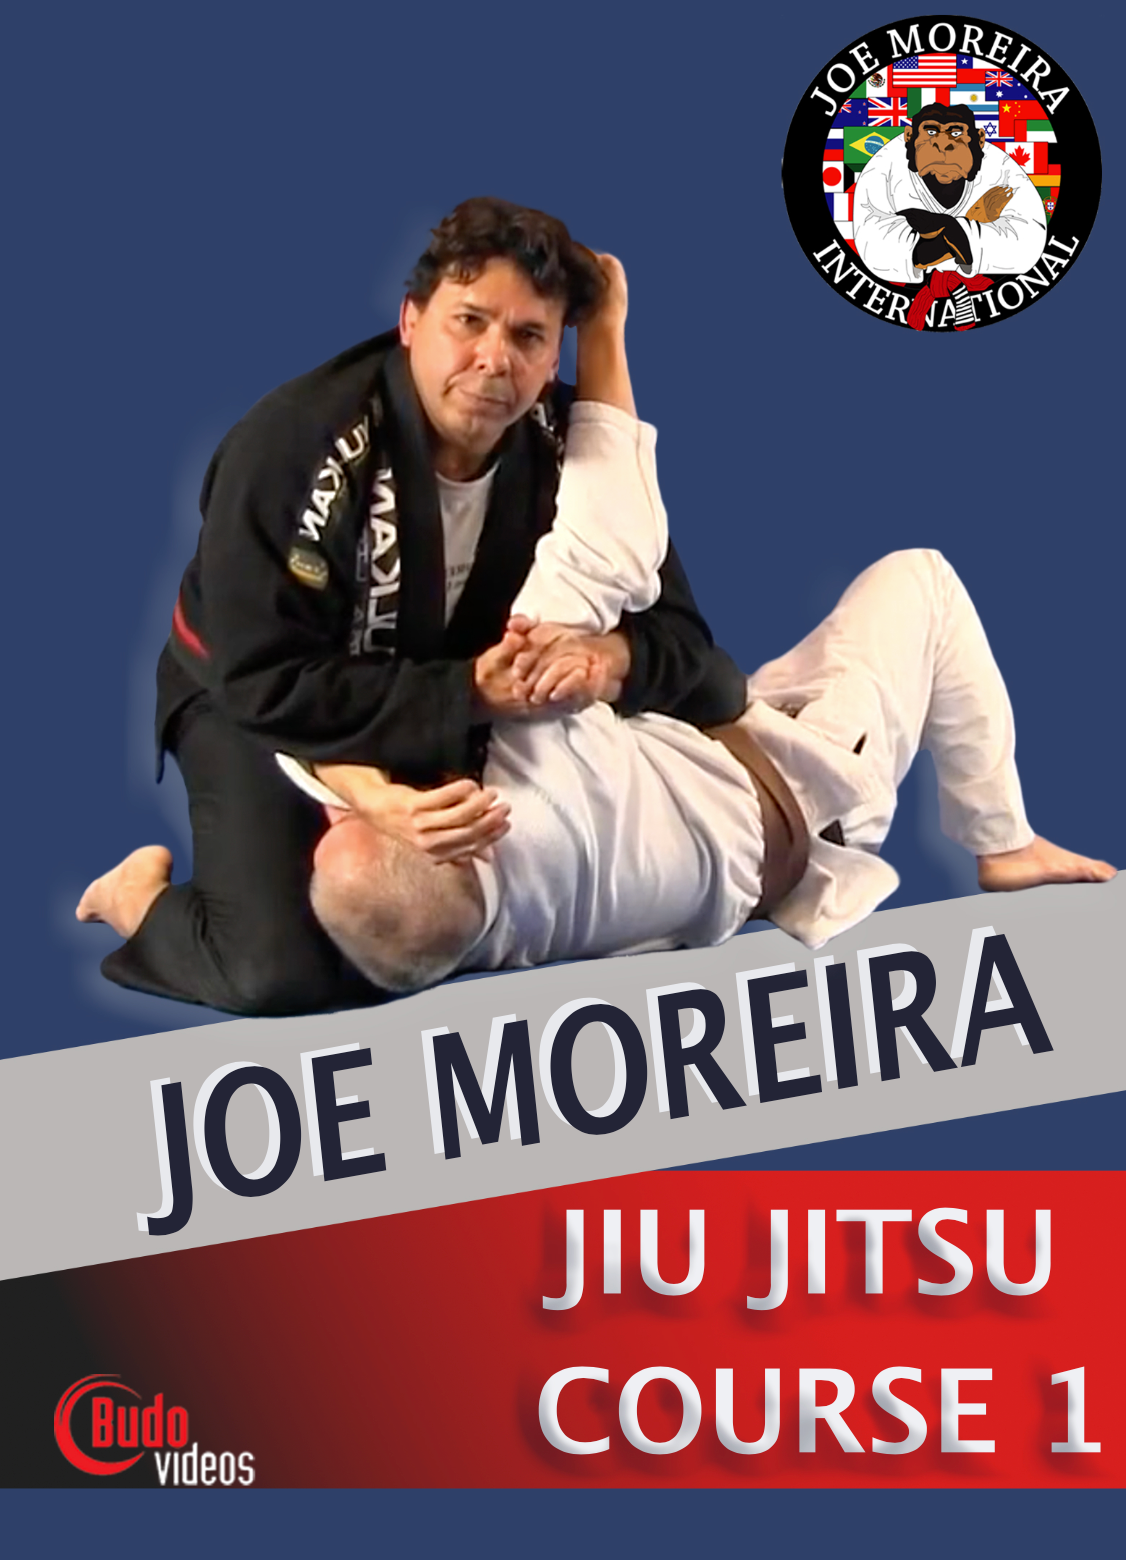 Joe Moreira Jiu Jitsu Course 1 (On Demand)